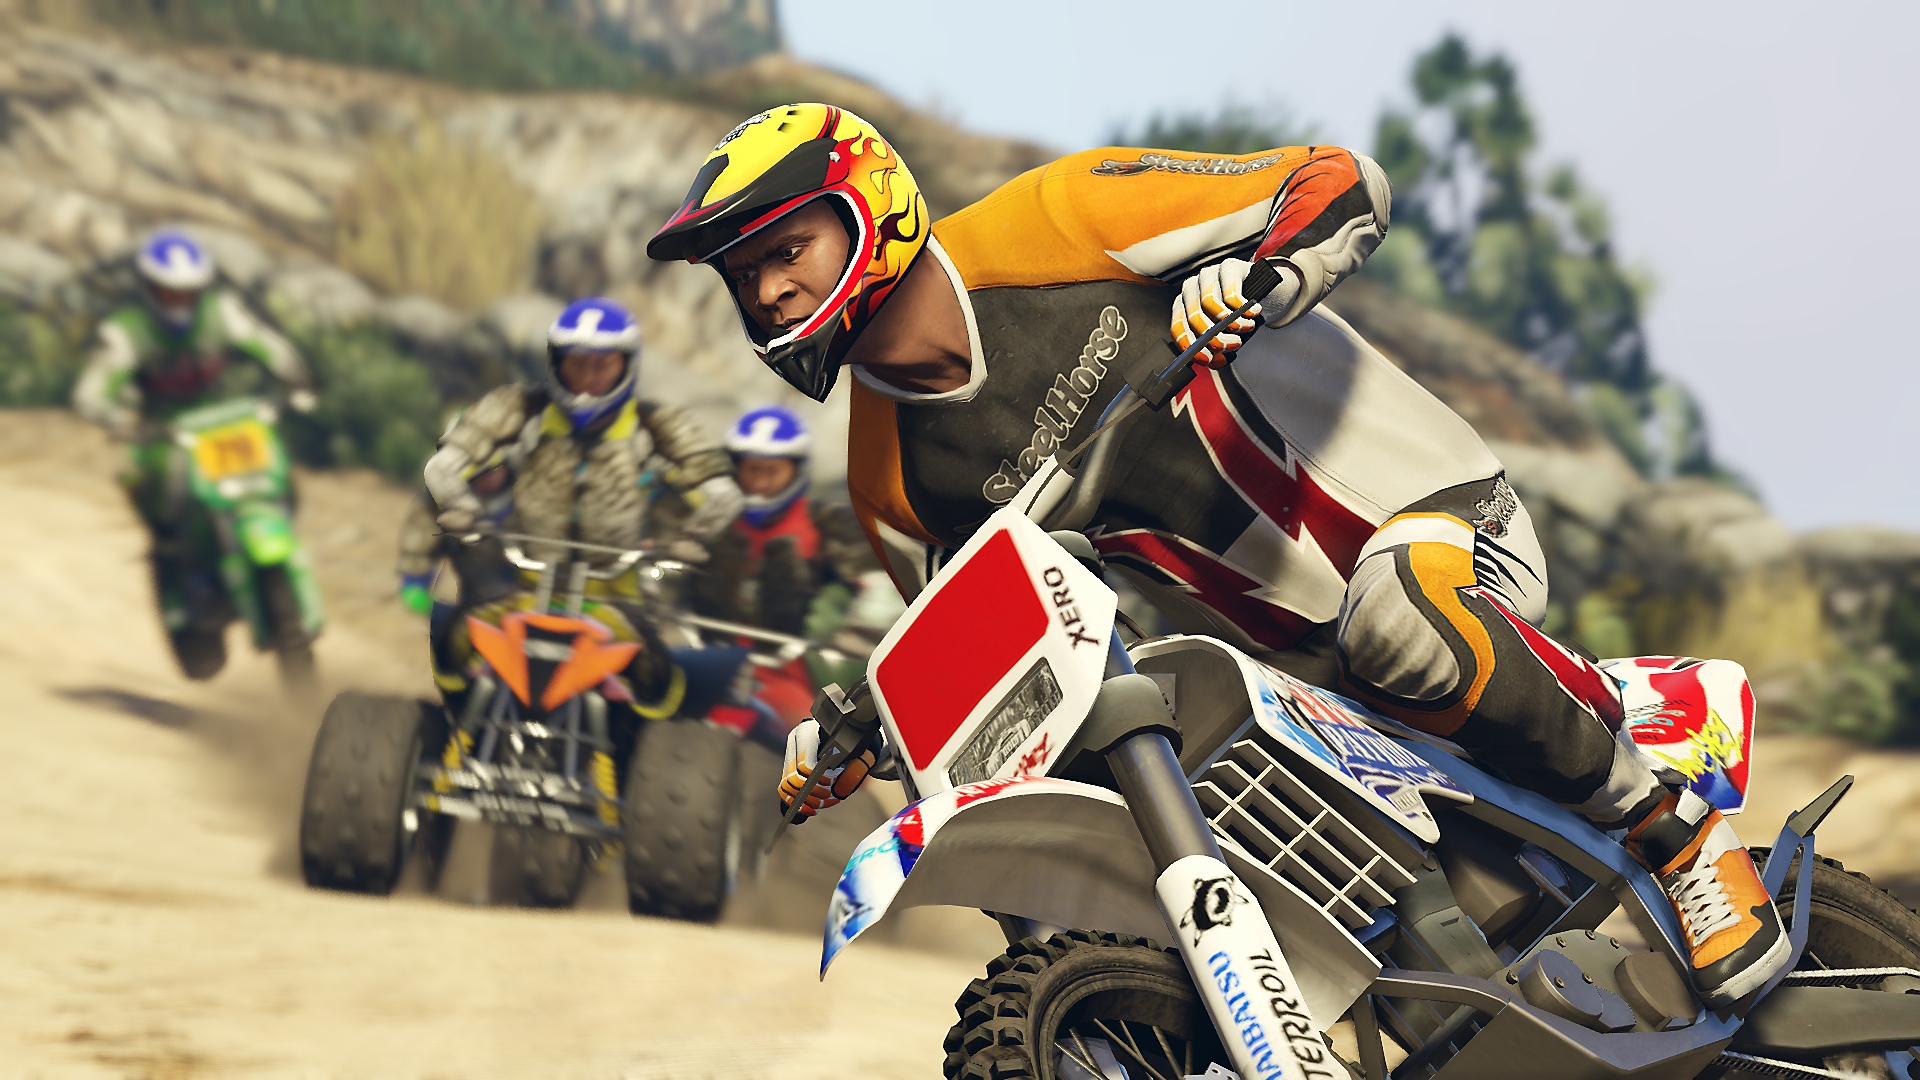 Grand Theft Auto V – zrzut ekranu przedstawiający główną postać, Franklina, ścigającego się na motocyklu motocrossowym wśród innych zawodników na quadach